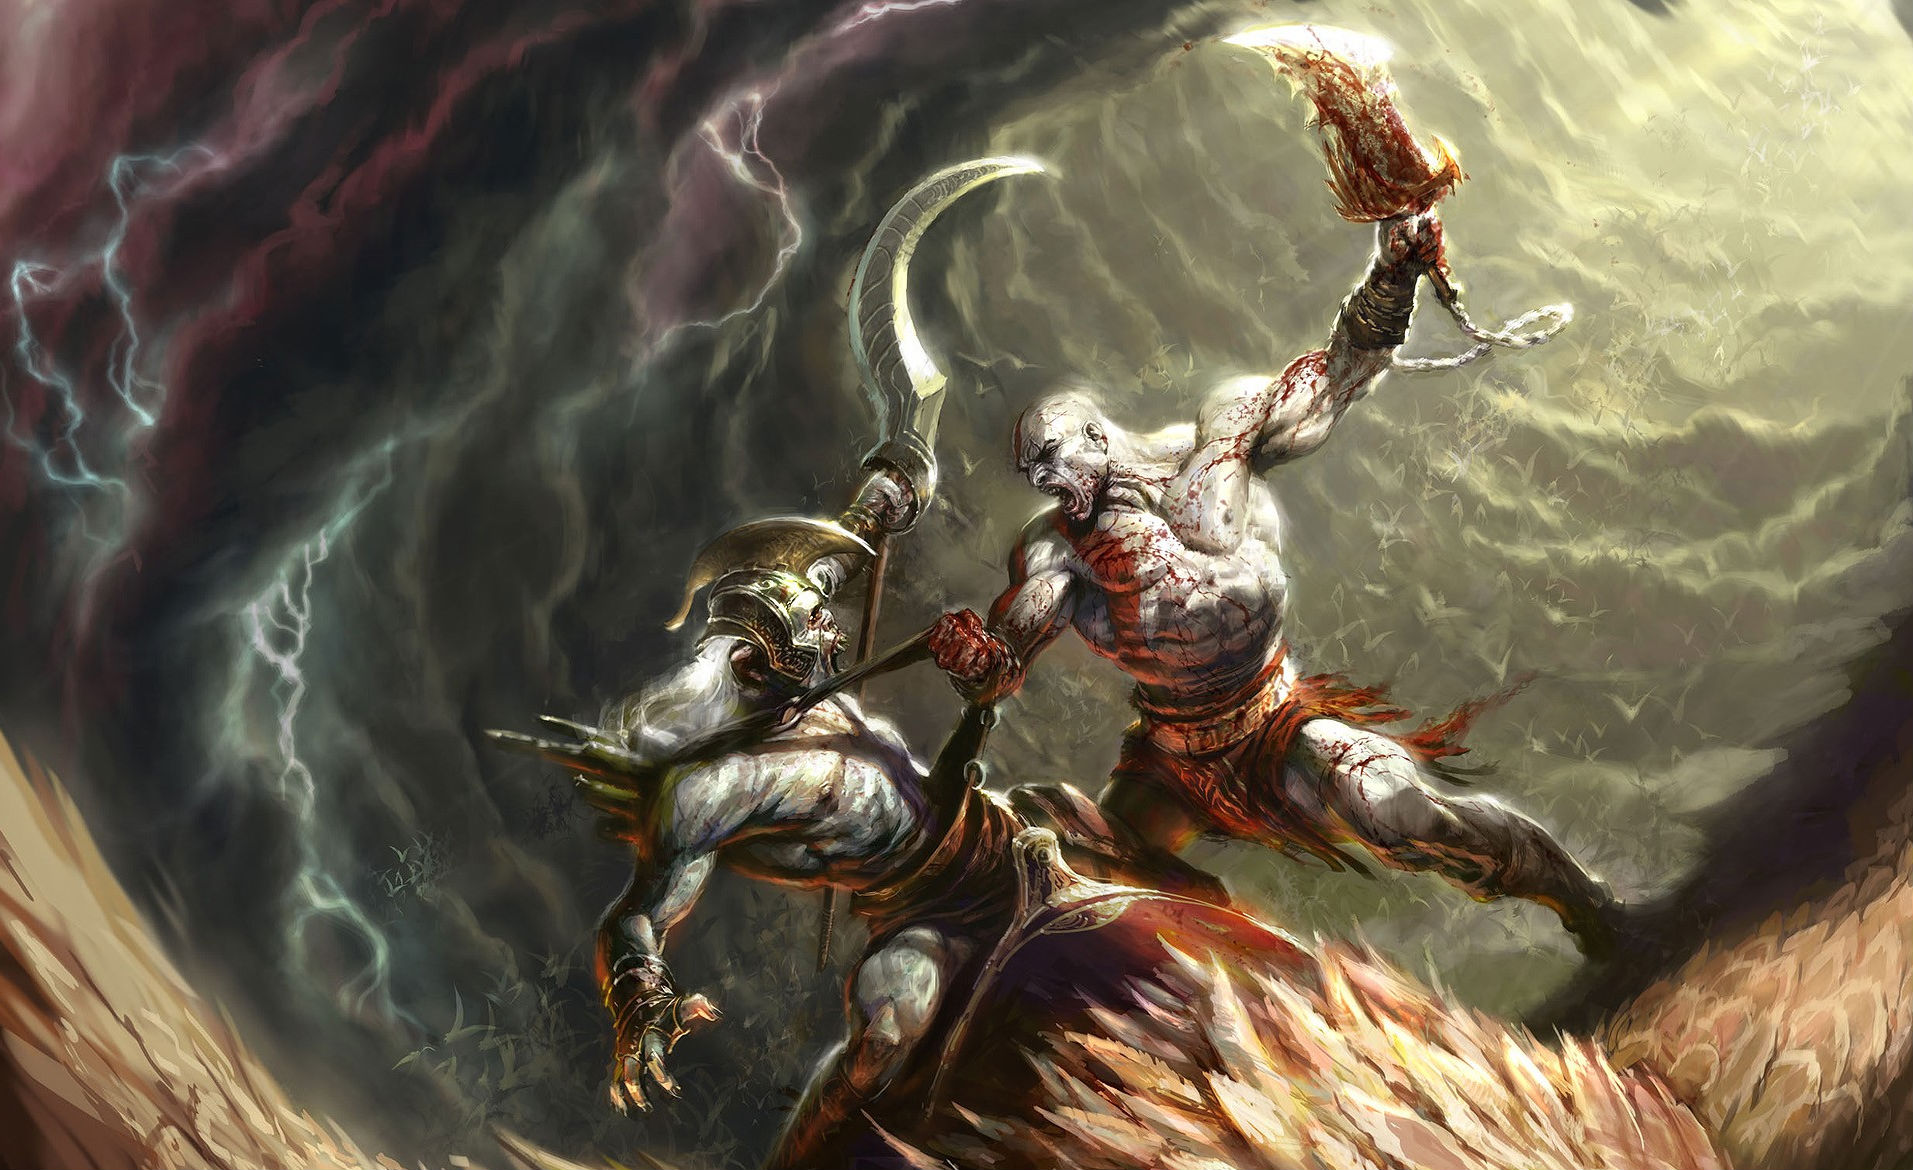 Kratos from God of War, stunning HD desktop wallpaper.